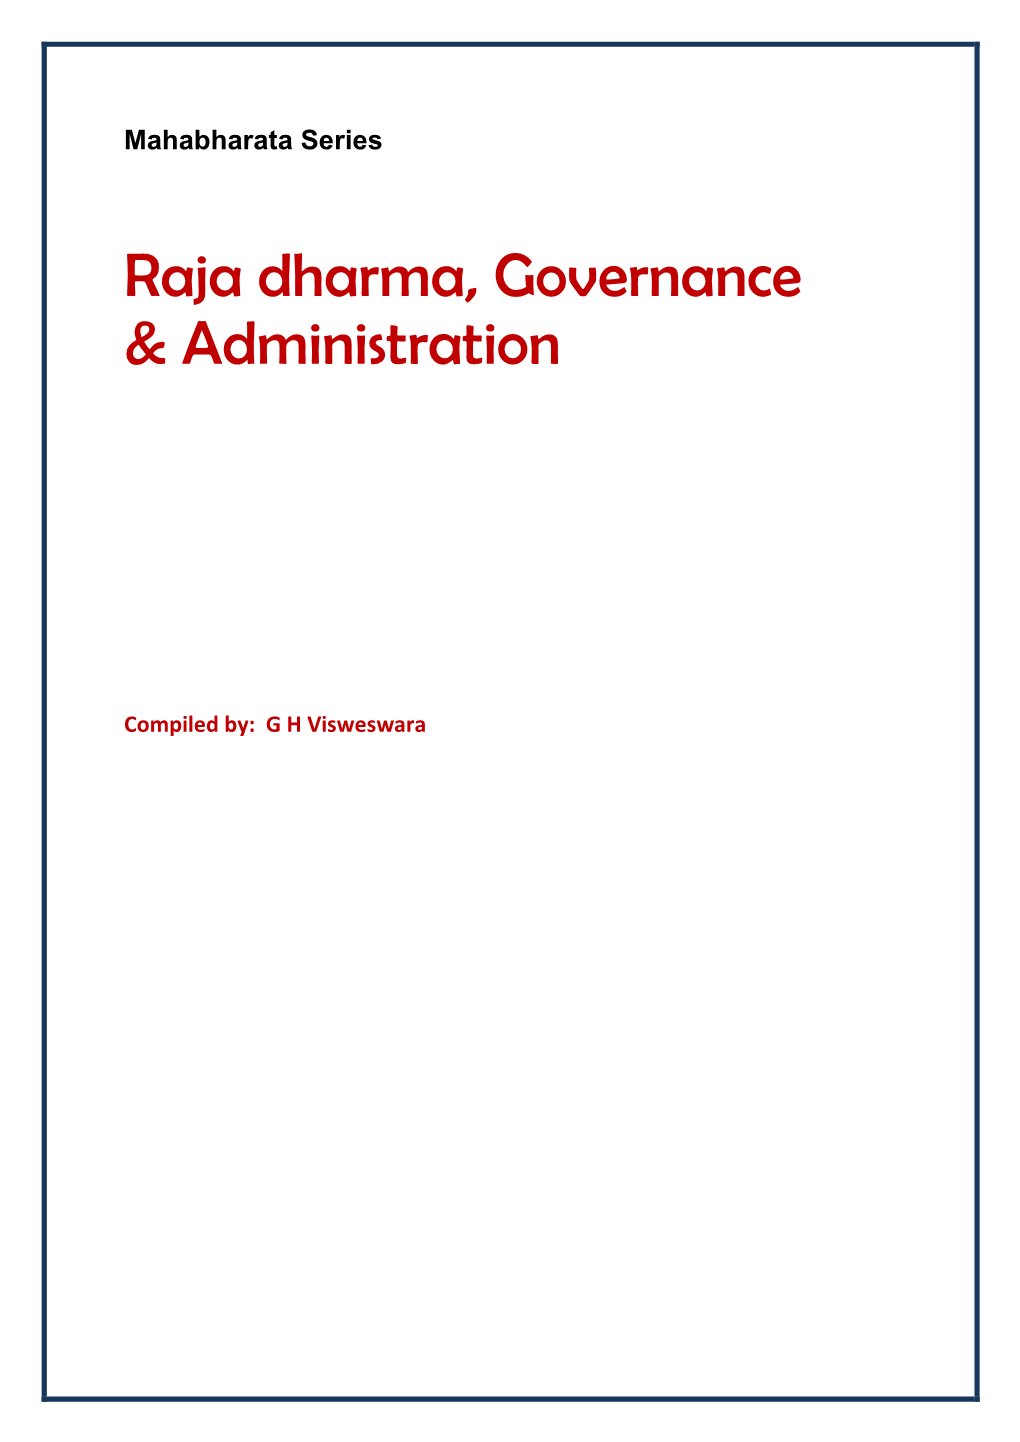 Raja Dharma, Governance & Administration